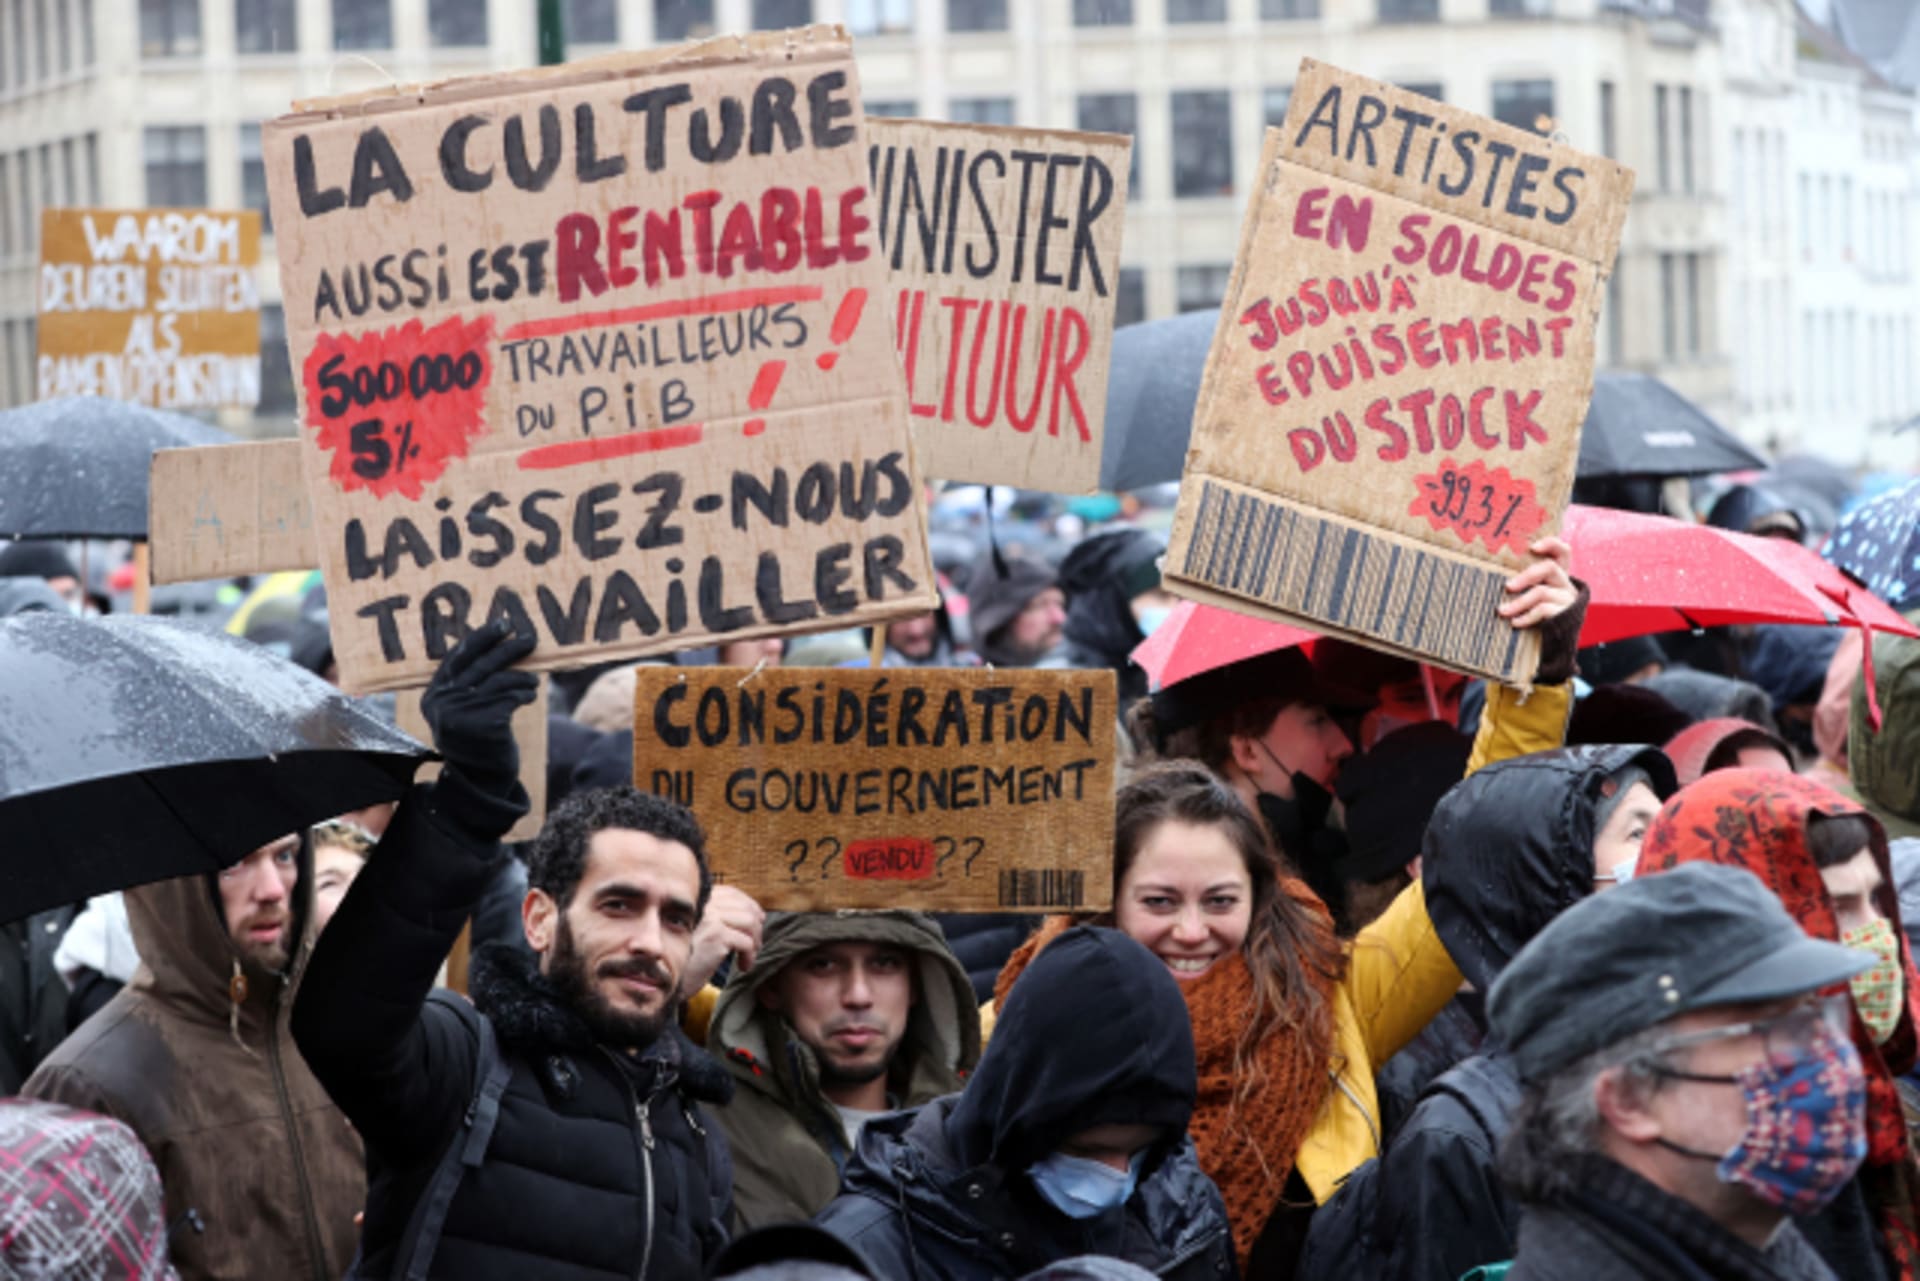 Tisíce lidí v Bruselu protestovaly proti uzavření divadel a kinosálů.